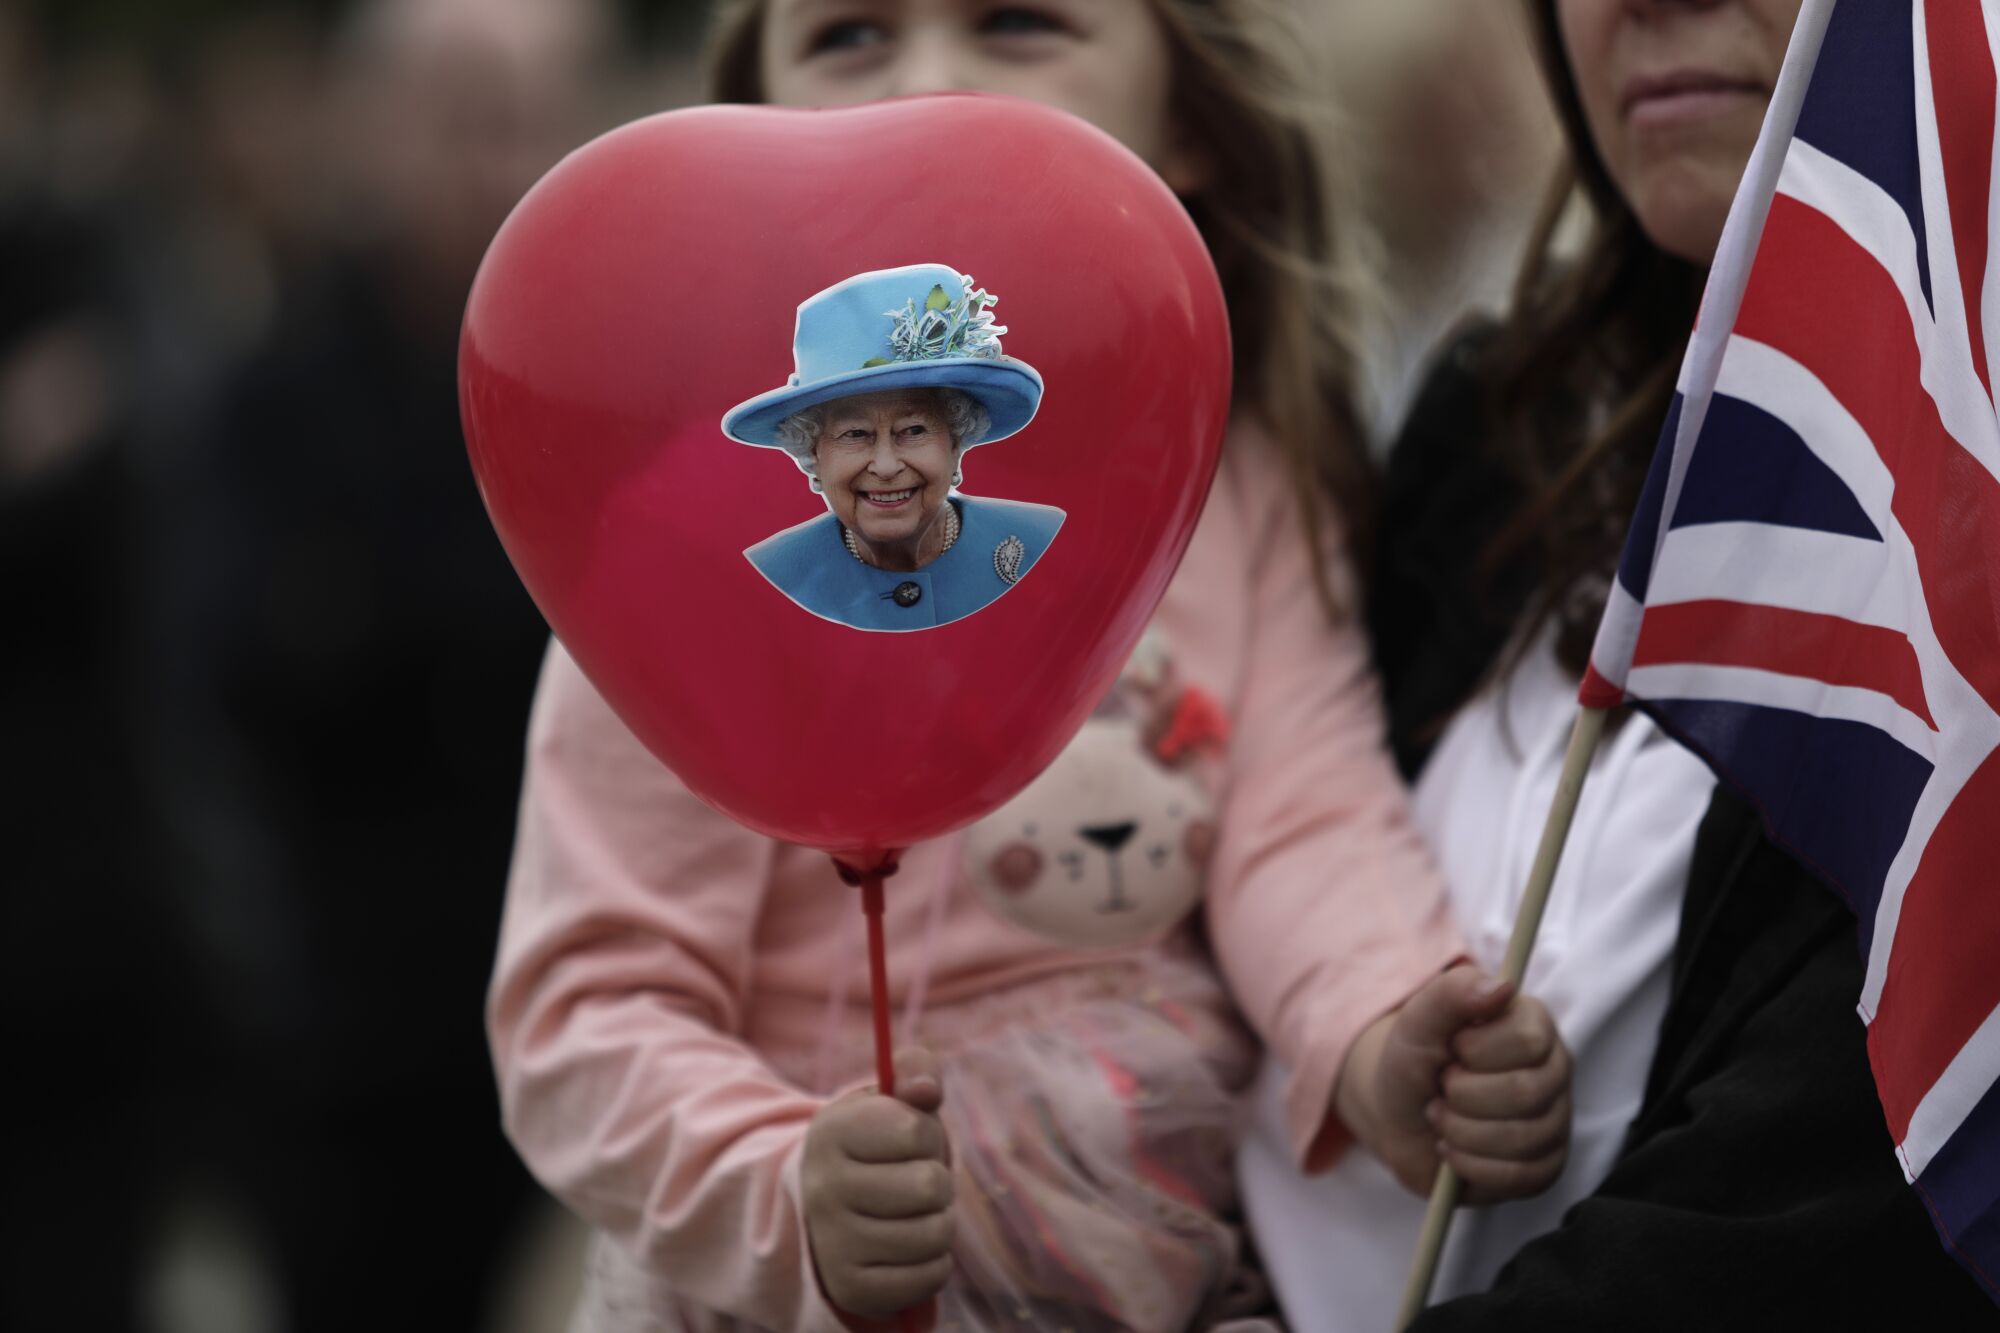 Una niña sostiene un globo con una imagen de la reina y la bandera Union Jack.